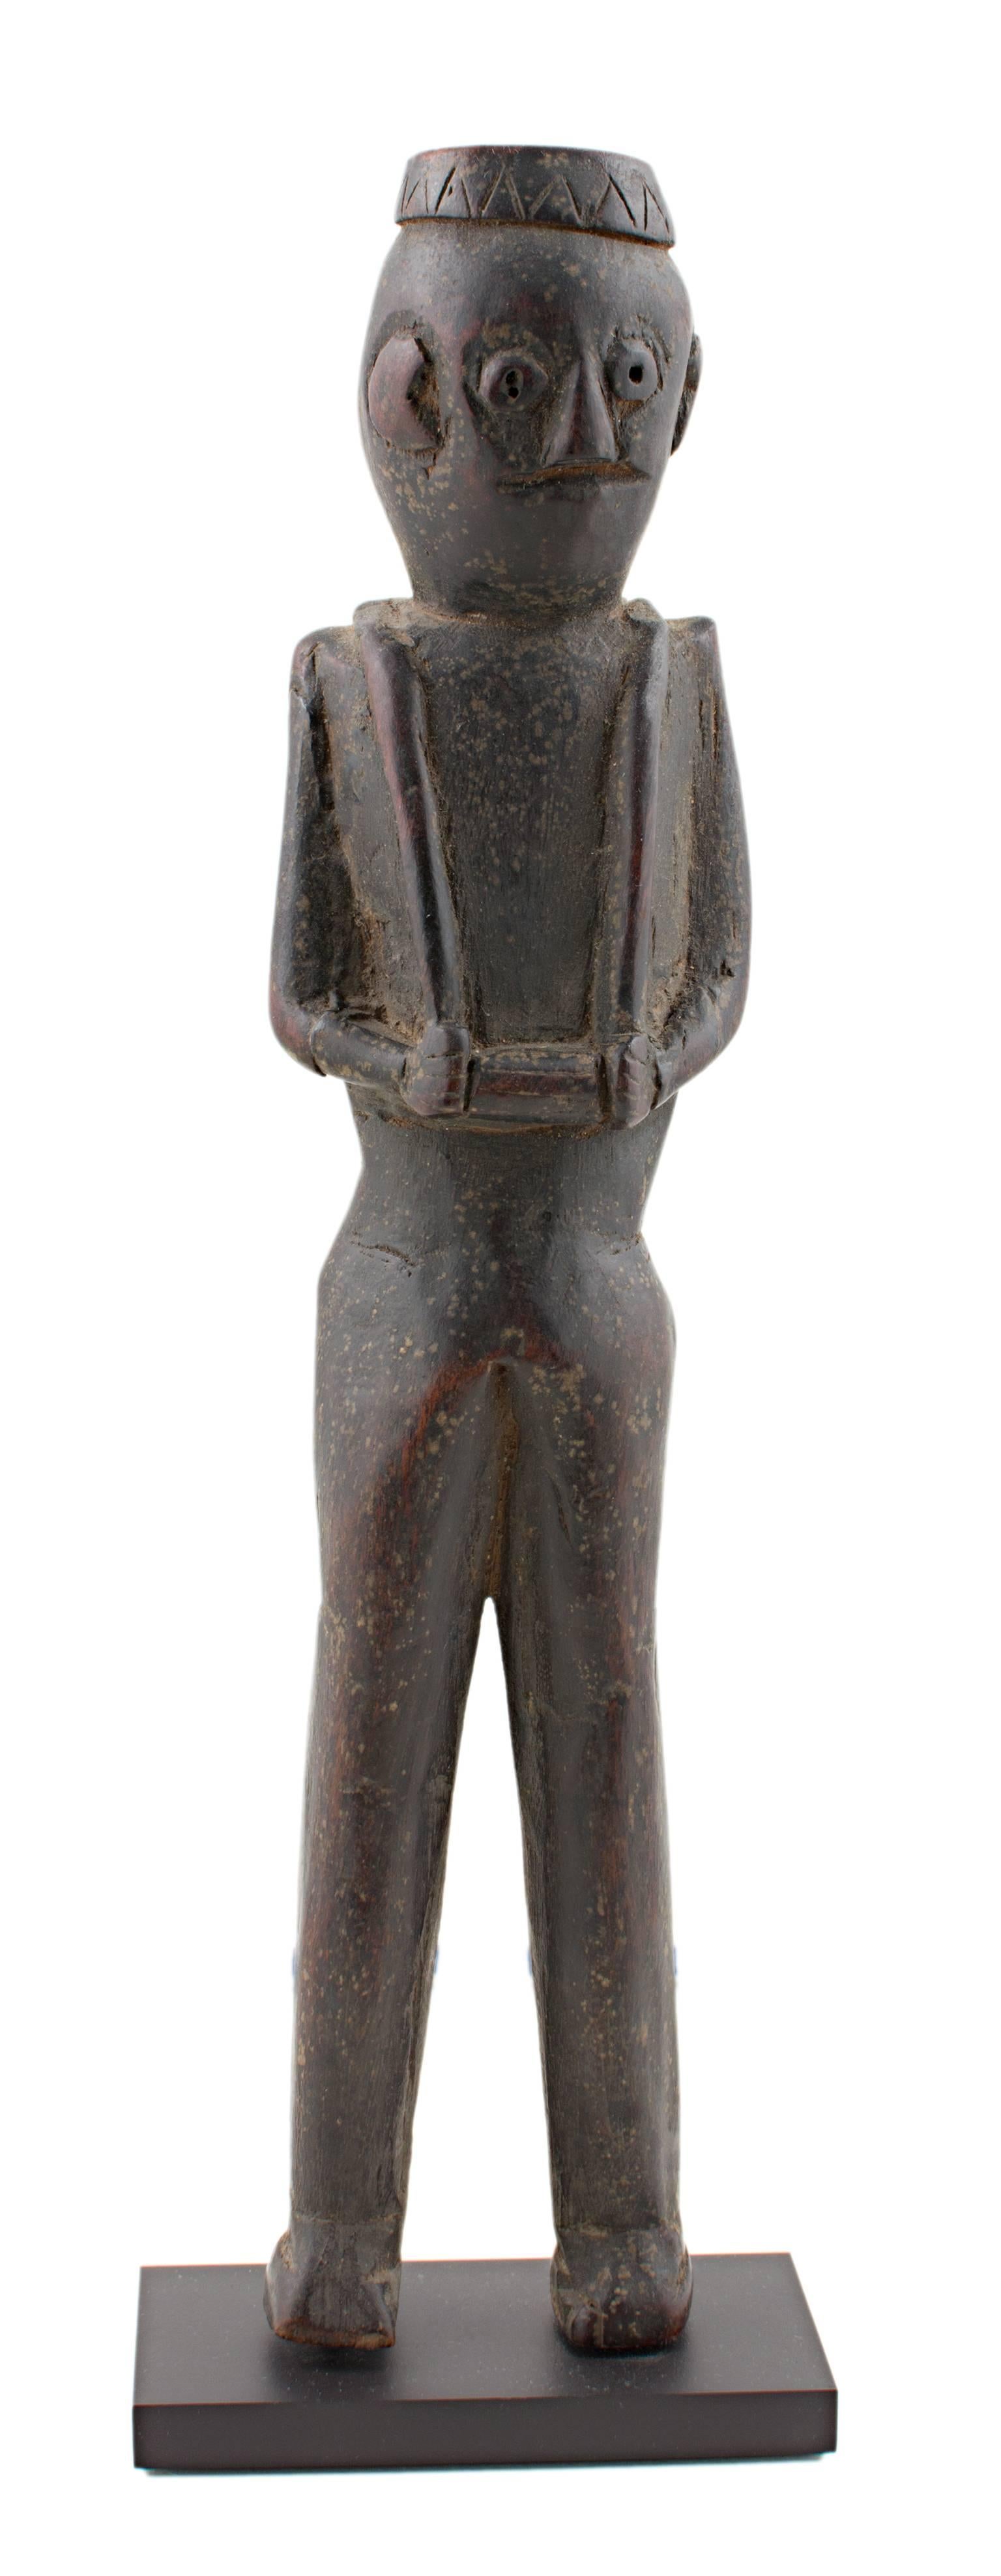 Unknown Figurative Sculpture – Geschnitzte Holzfigur "Dolpo Shamanic Figur" (Dolpo Shamanic Figur), um 1900